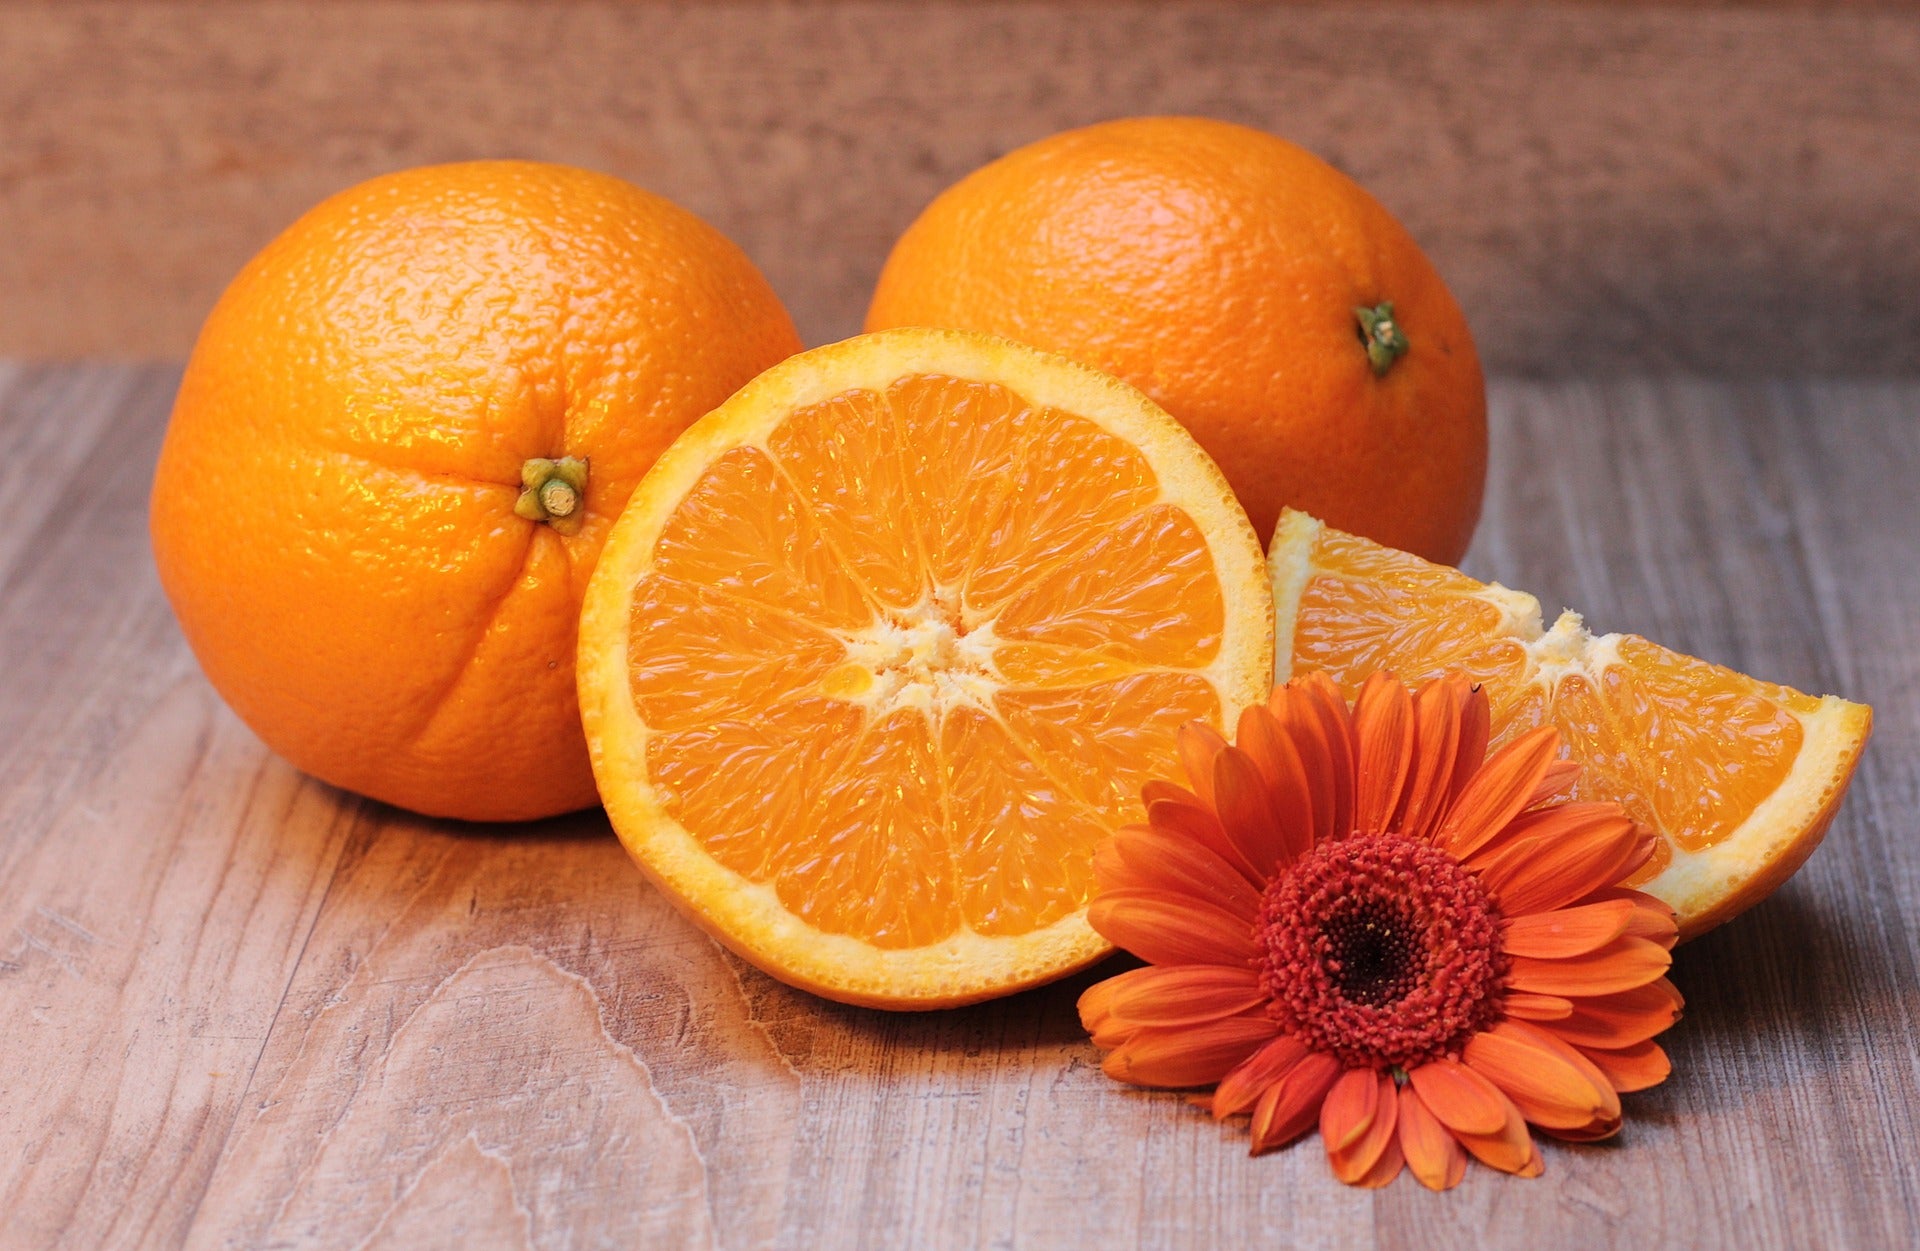 Orangen - ganz und aufgeschnitten mit einer orangenen Blüte